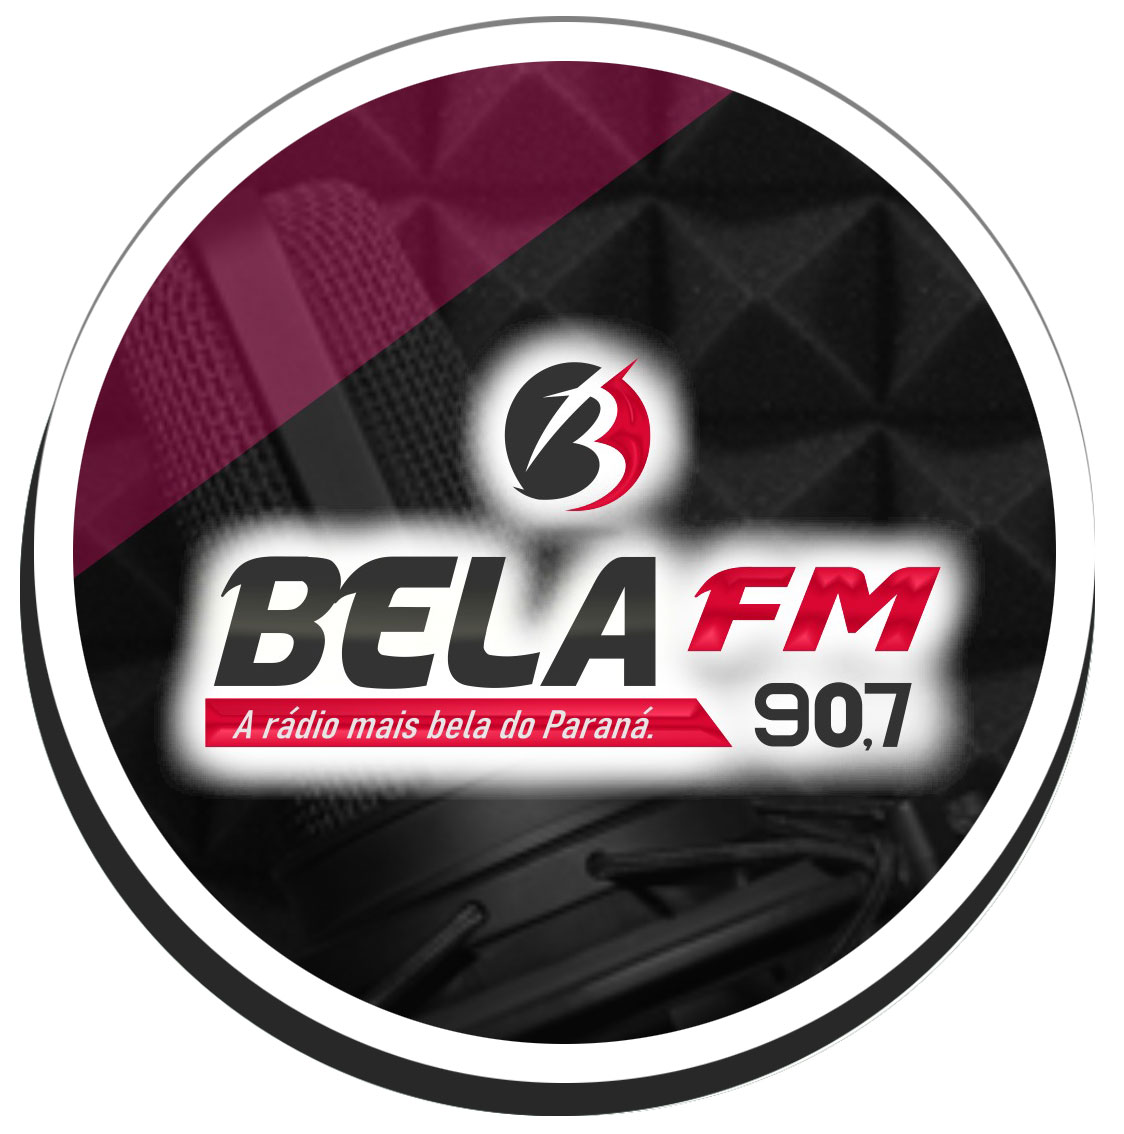 Rádio Bela FM 90,7 Mhz - A Rádio Mais Bela do Paraná